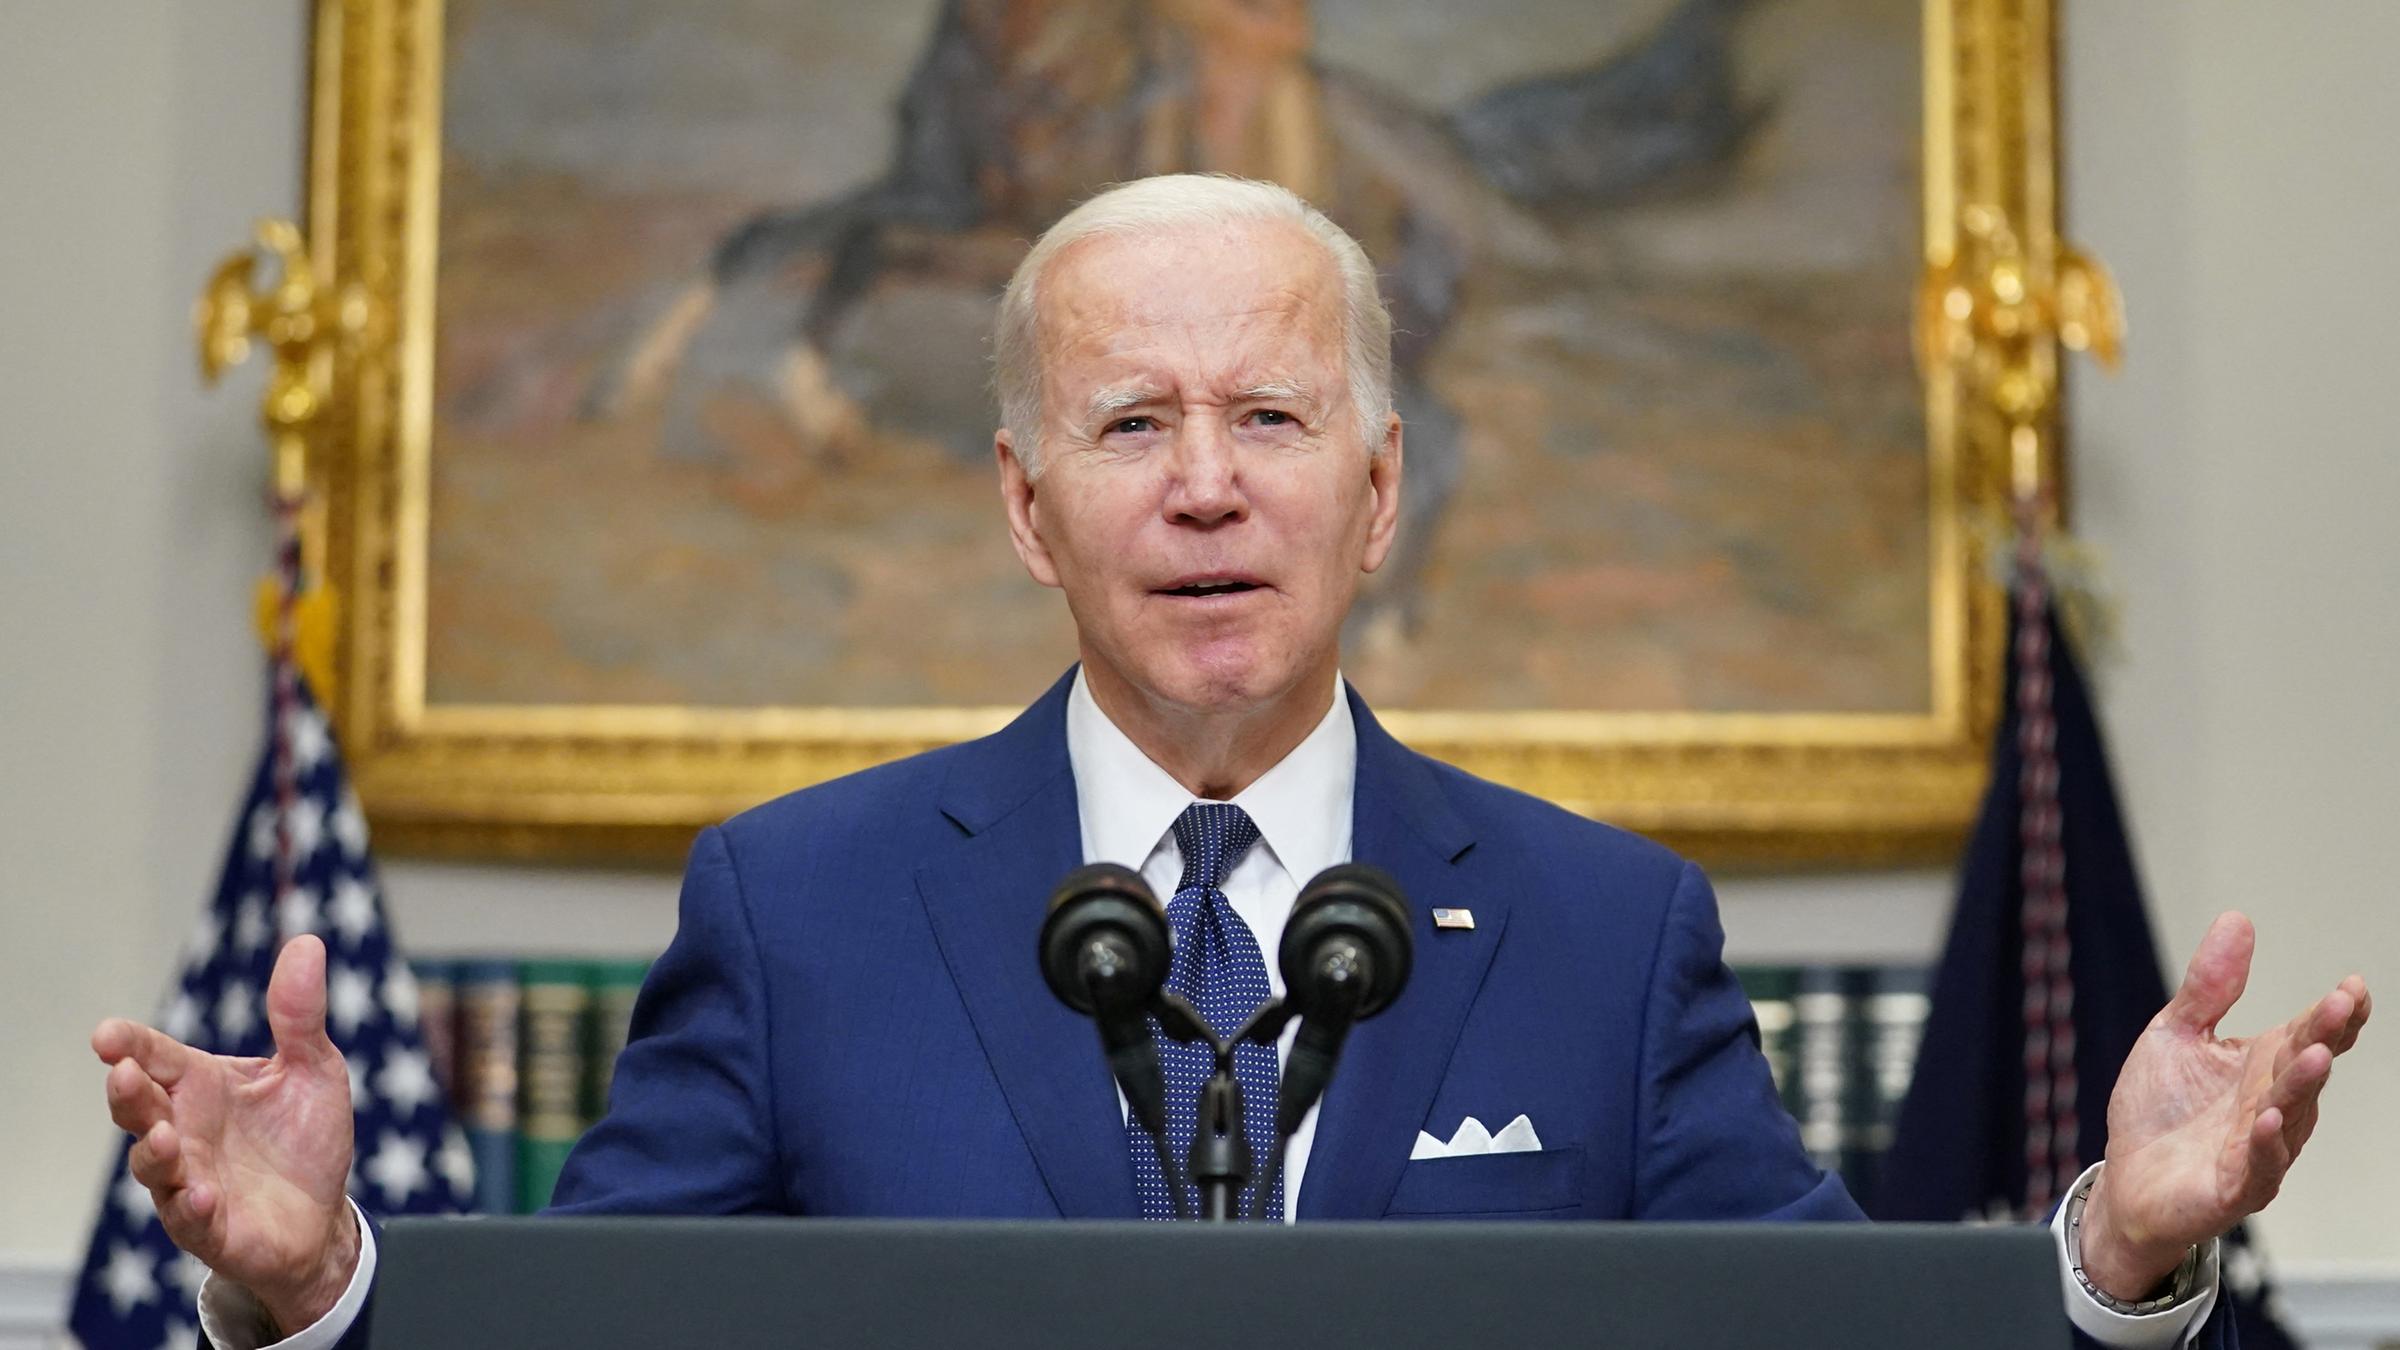 Präsident Joe Biden hält inne, als er am Dienstag, den 24. Mai 2022, vom Roosevelt Room im Weißen Haus in Washington über die Massenschießerei an der Robb Elementary School in Uvalde, Texas, spricht